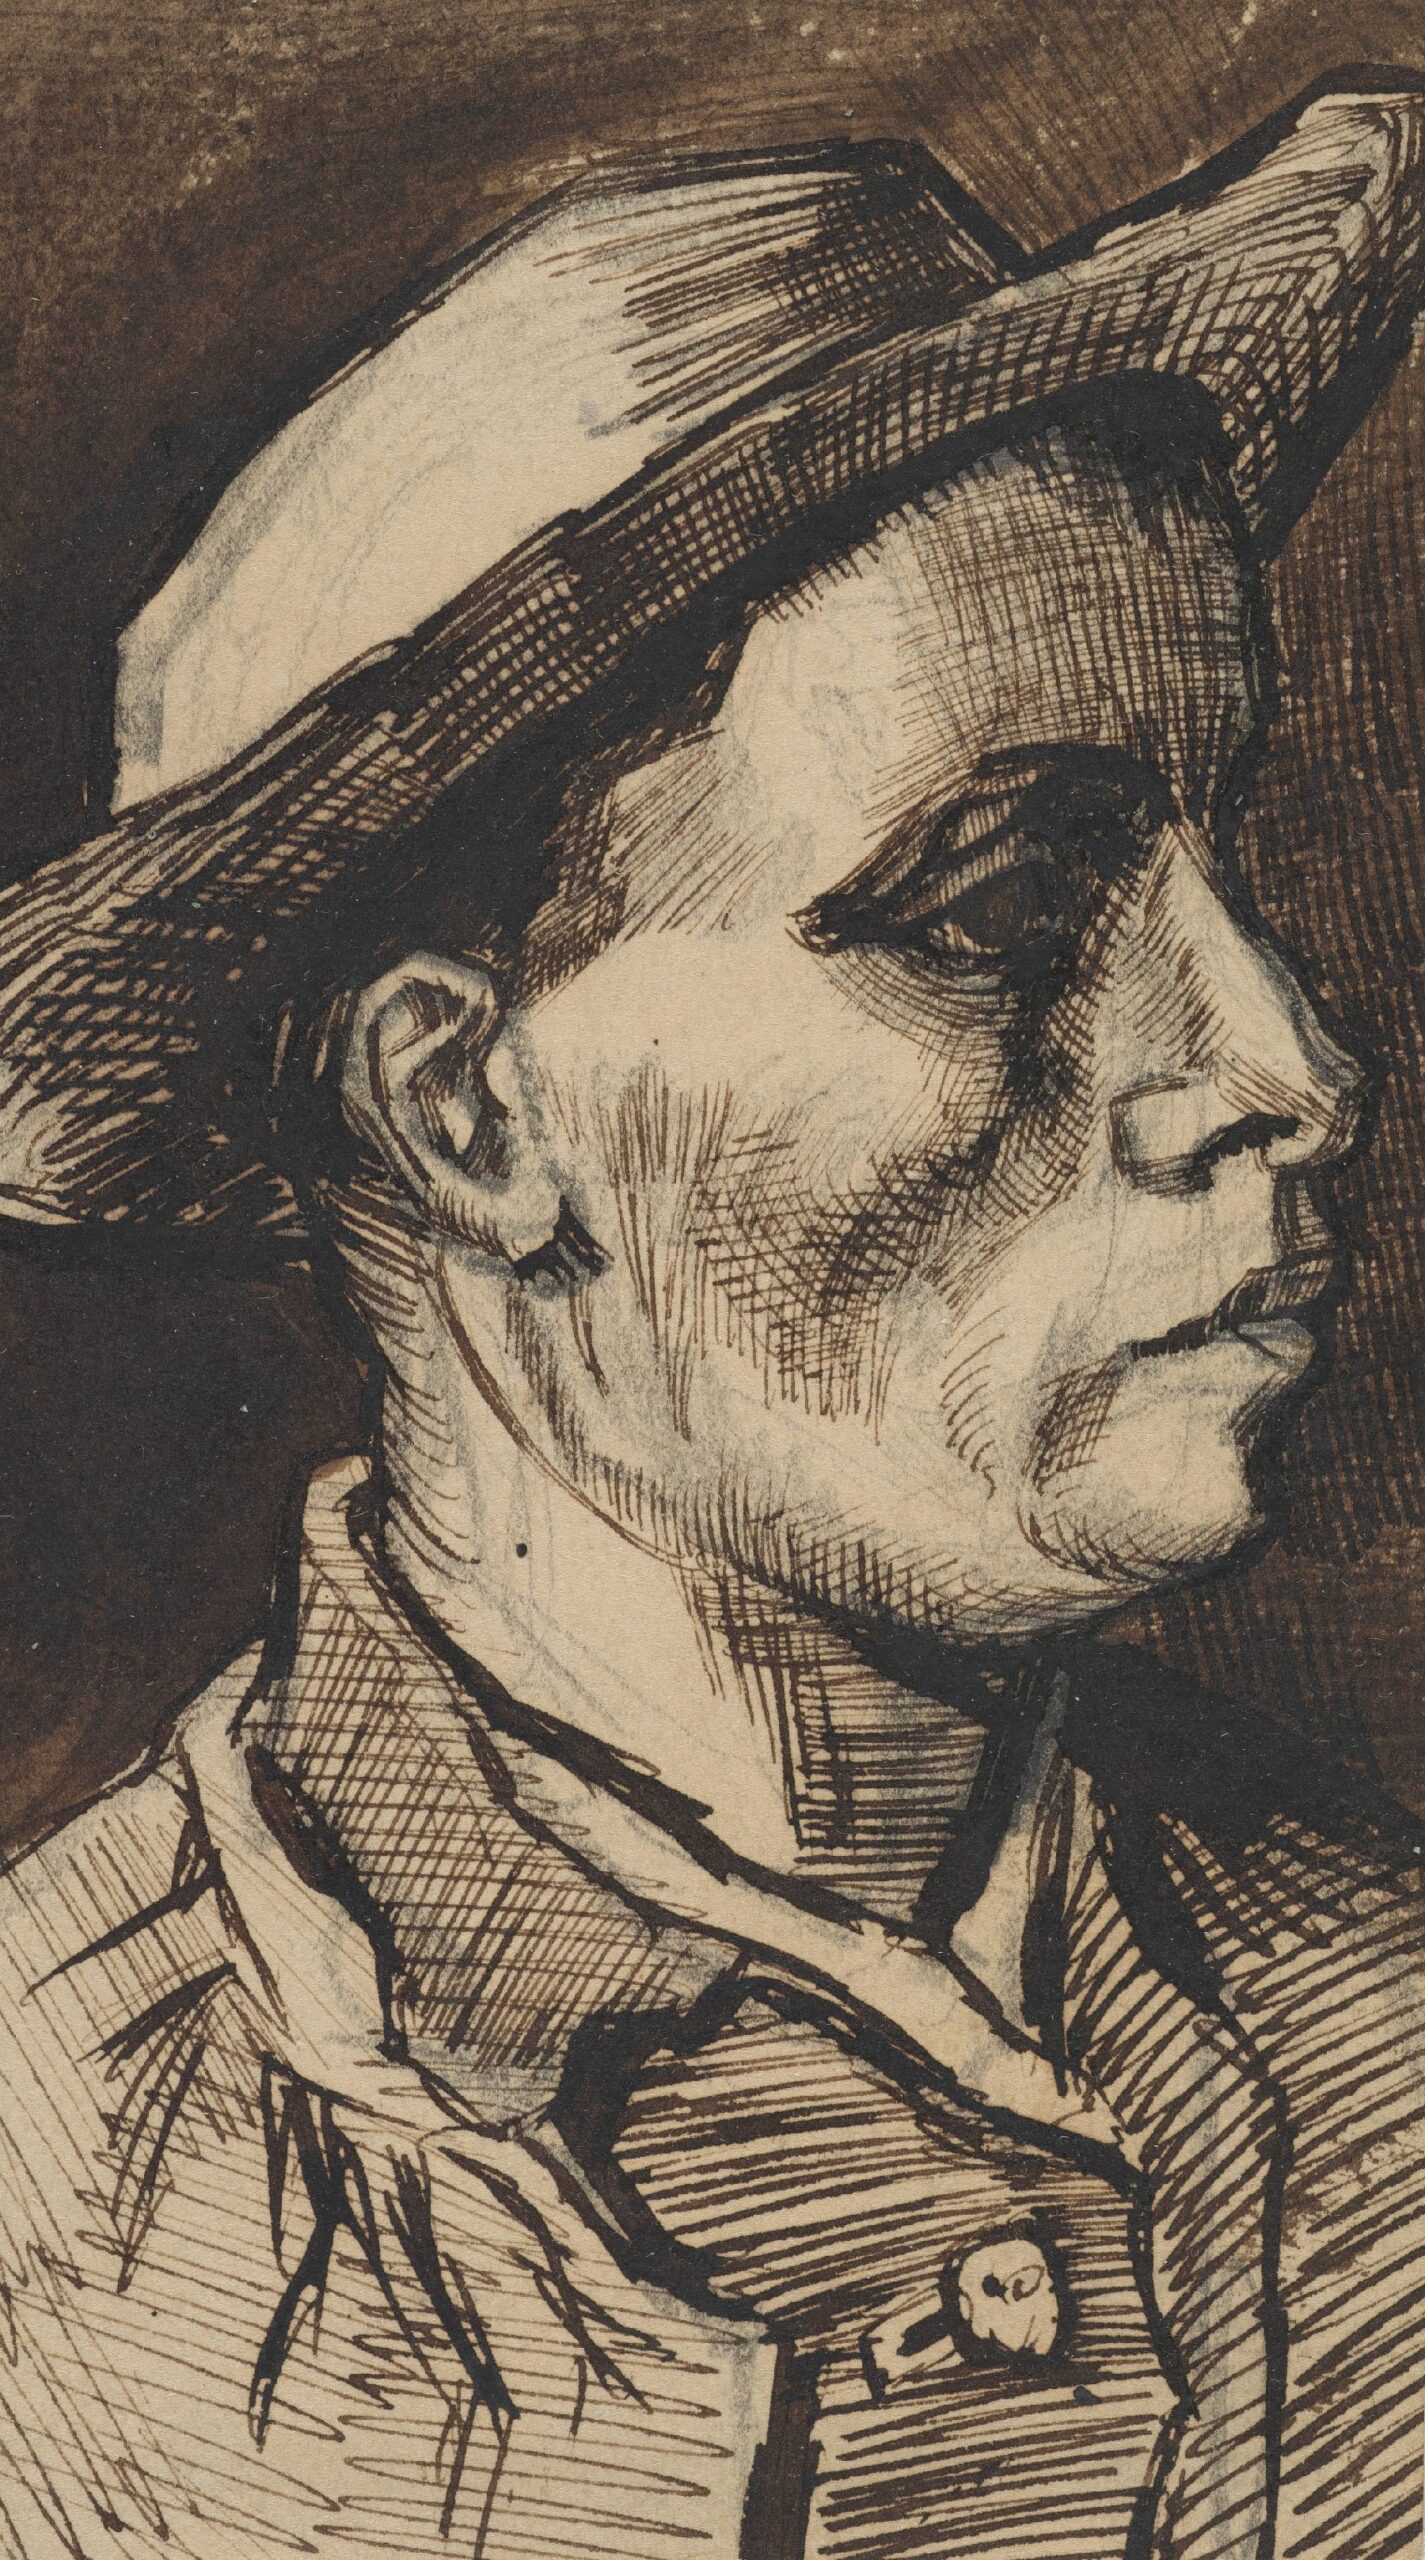 Kop van een man Vincent van Gogh (1853 - 1890), Nuenen, december 1884-januari 1885